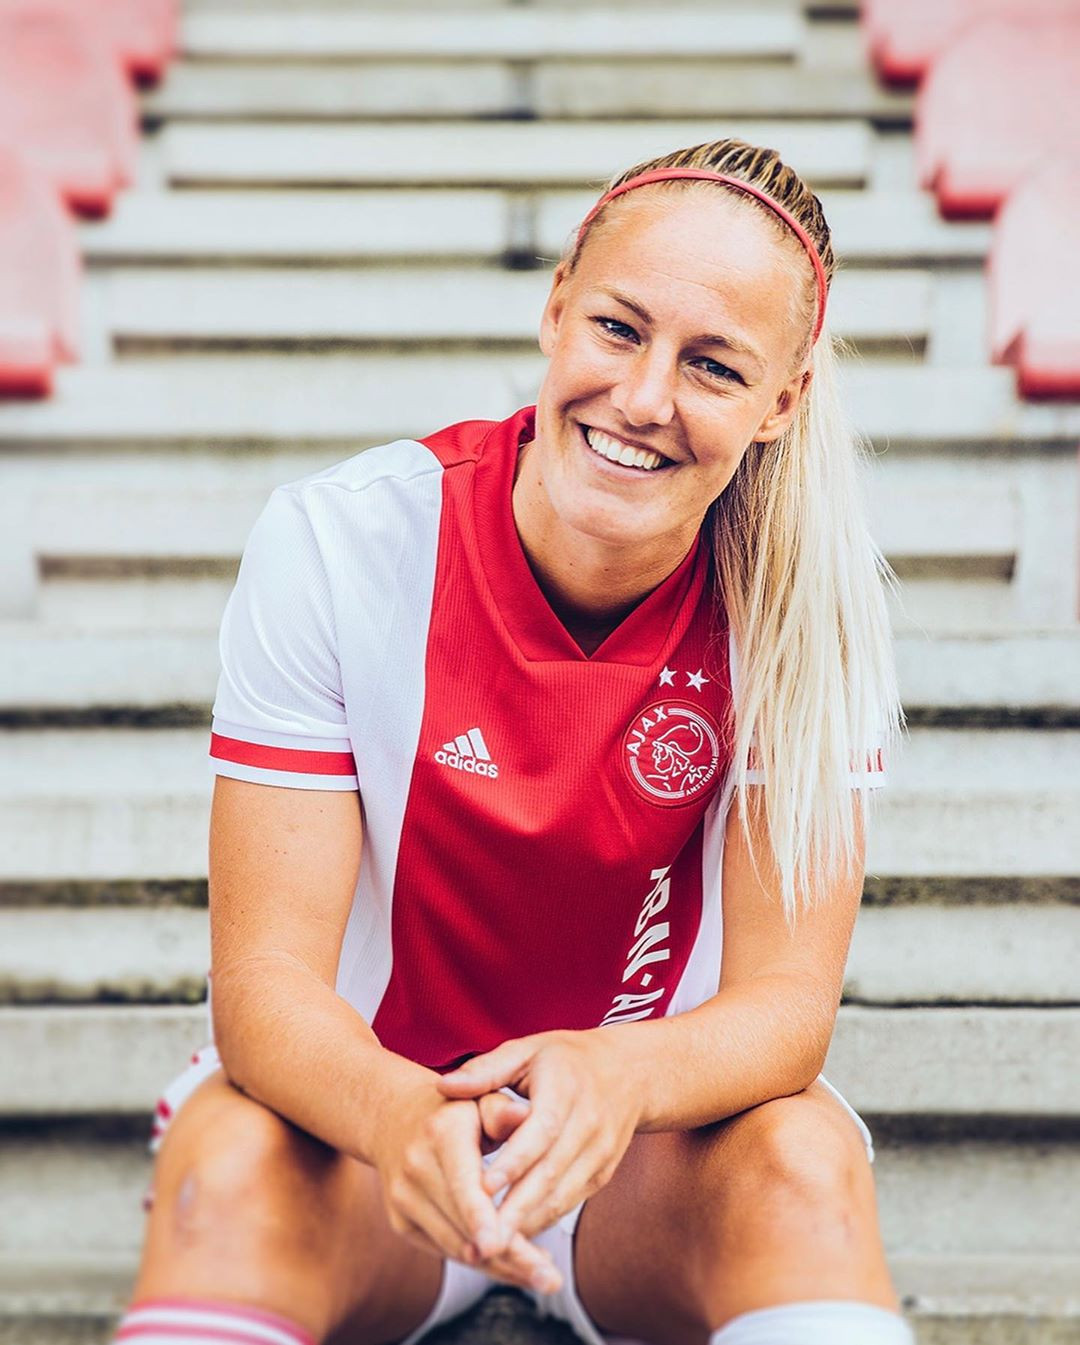 Zelden Imperialisme zoals dat Ajax vrouwen voetbalshirt 2020-2021 - Voetbalshirts.com